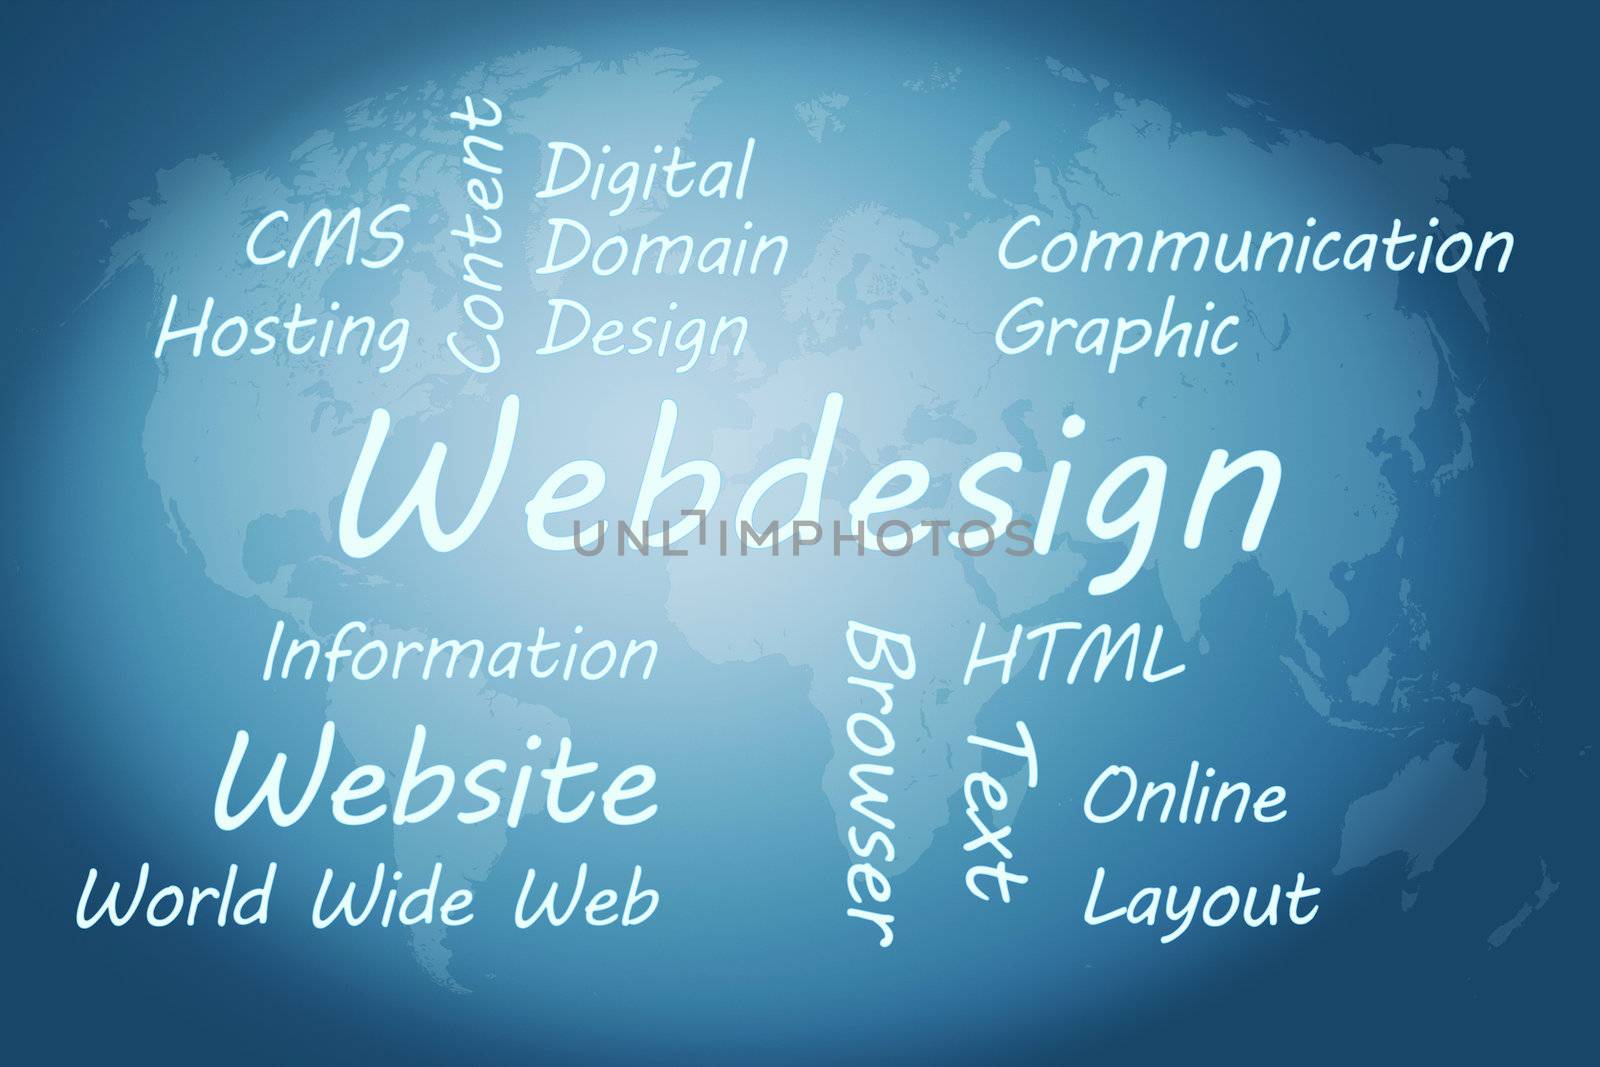 Webdesign Concept by Mazirama